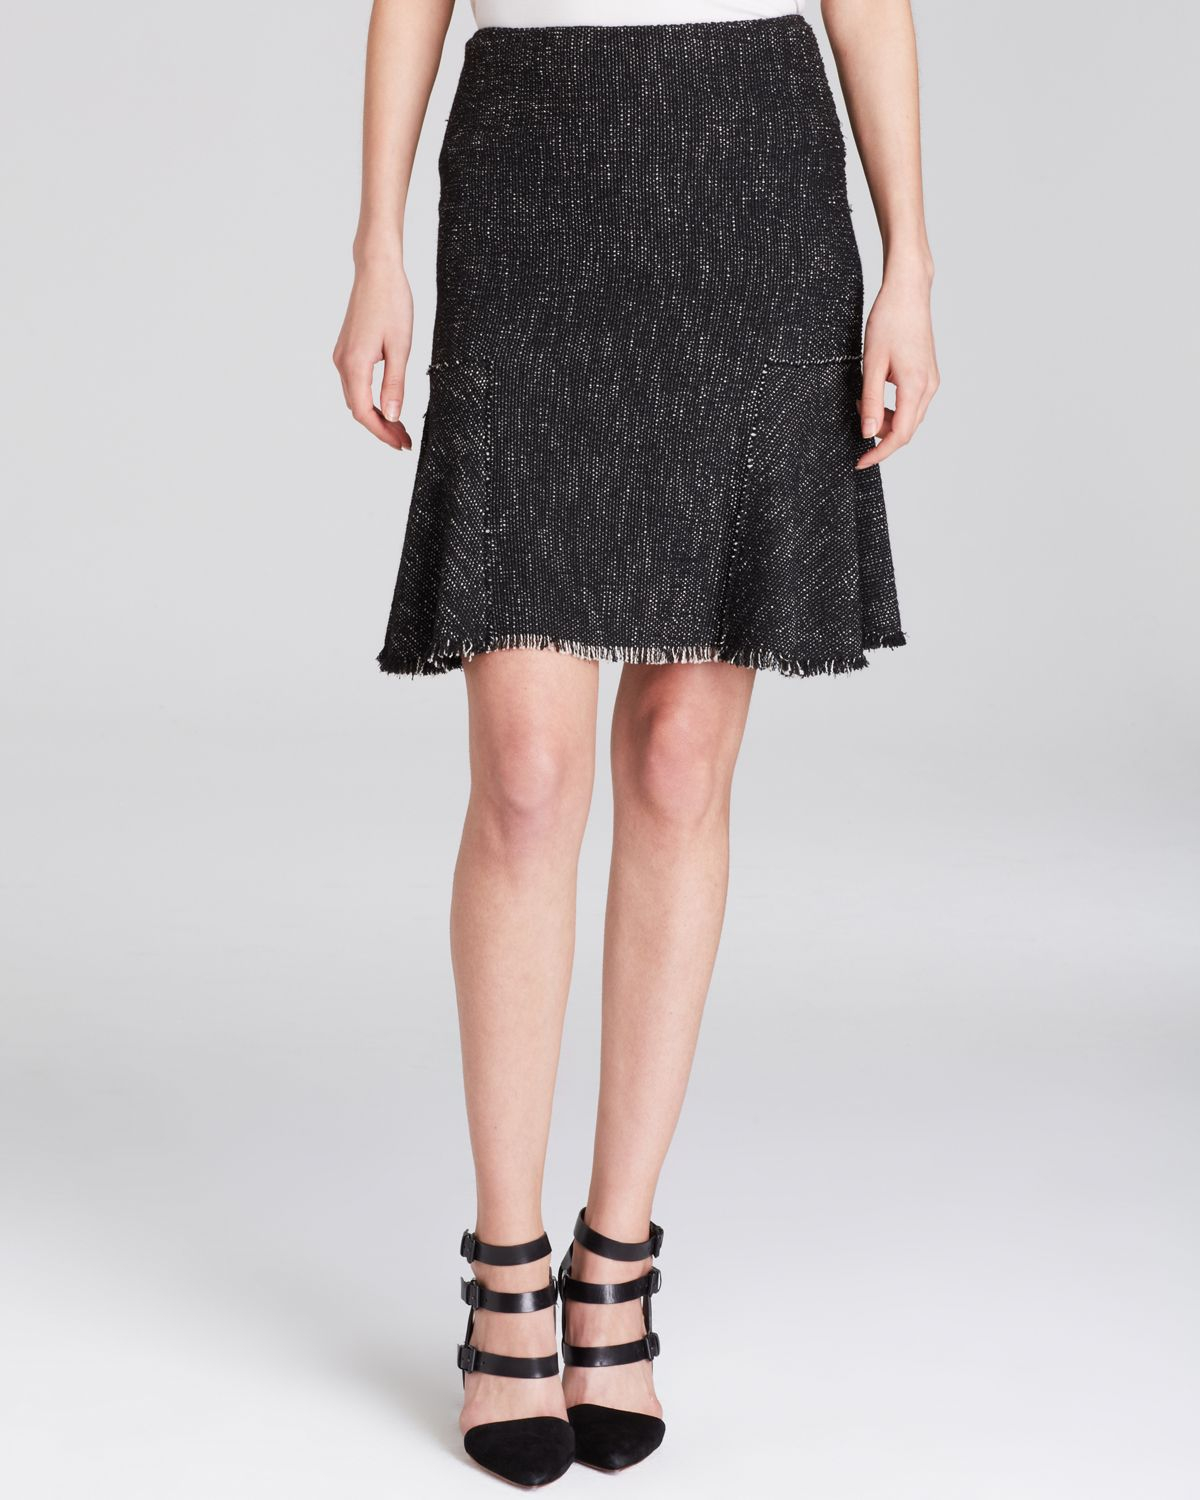 Elie Tahari Bonnie Tweed Skirt in Black - Lyst